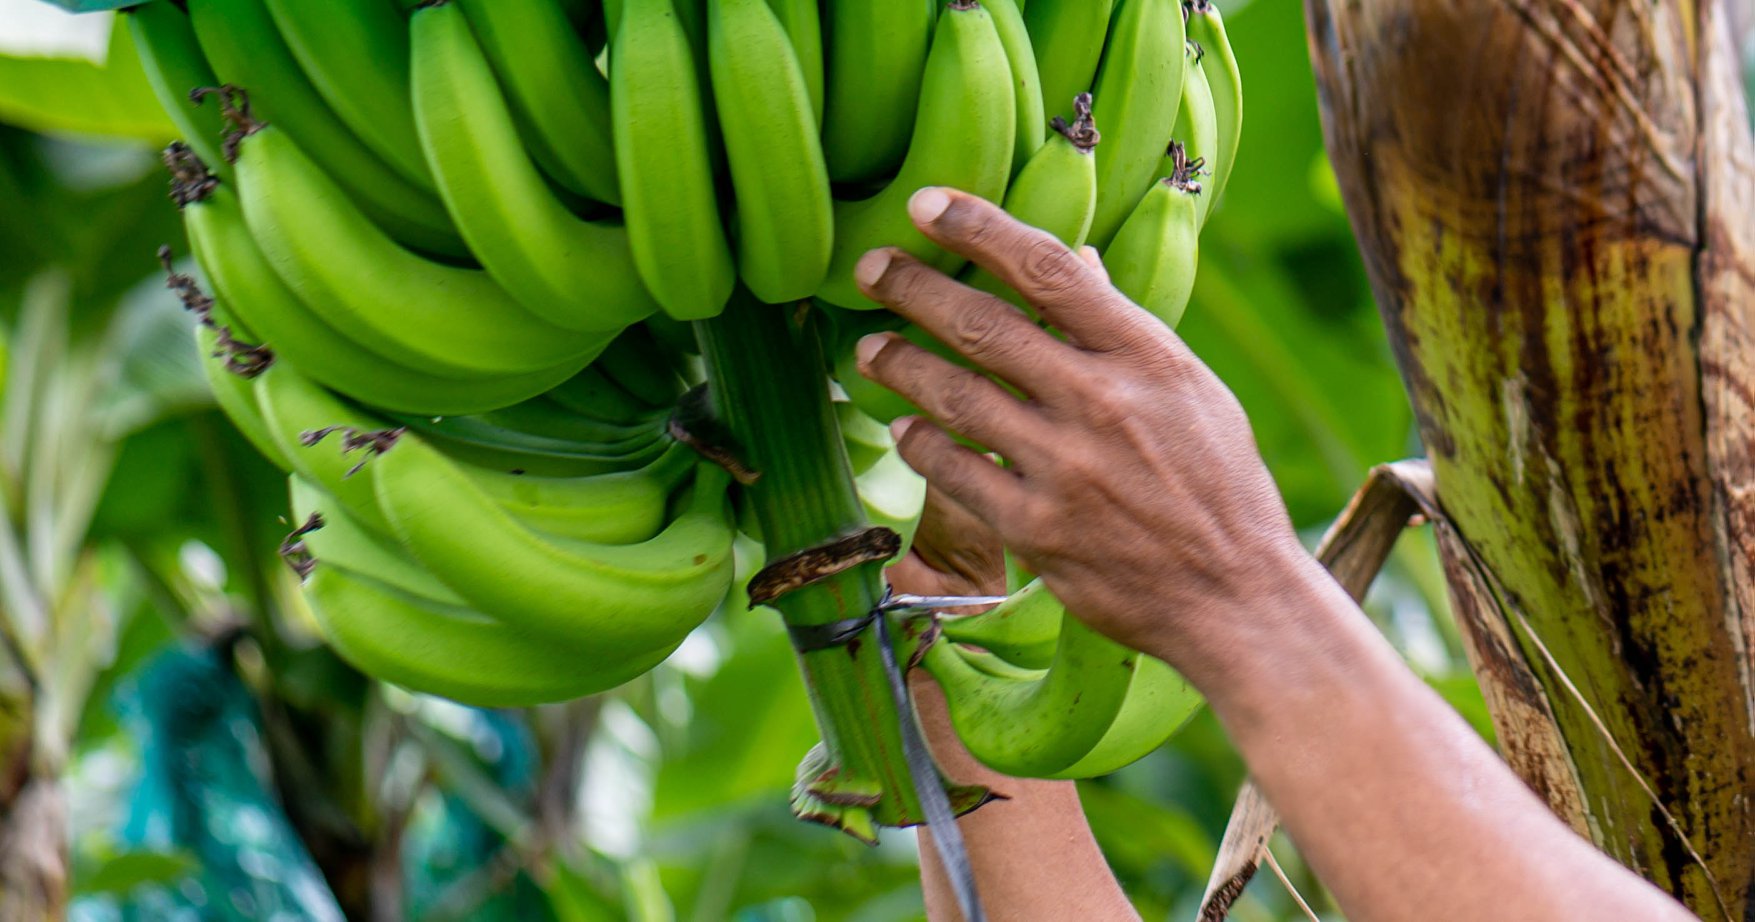     Mobilisation des petits producteurs de bananes en Martinique

